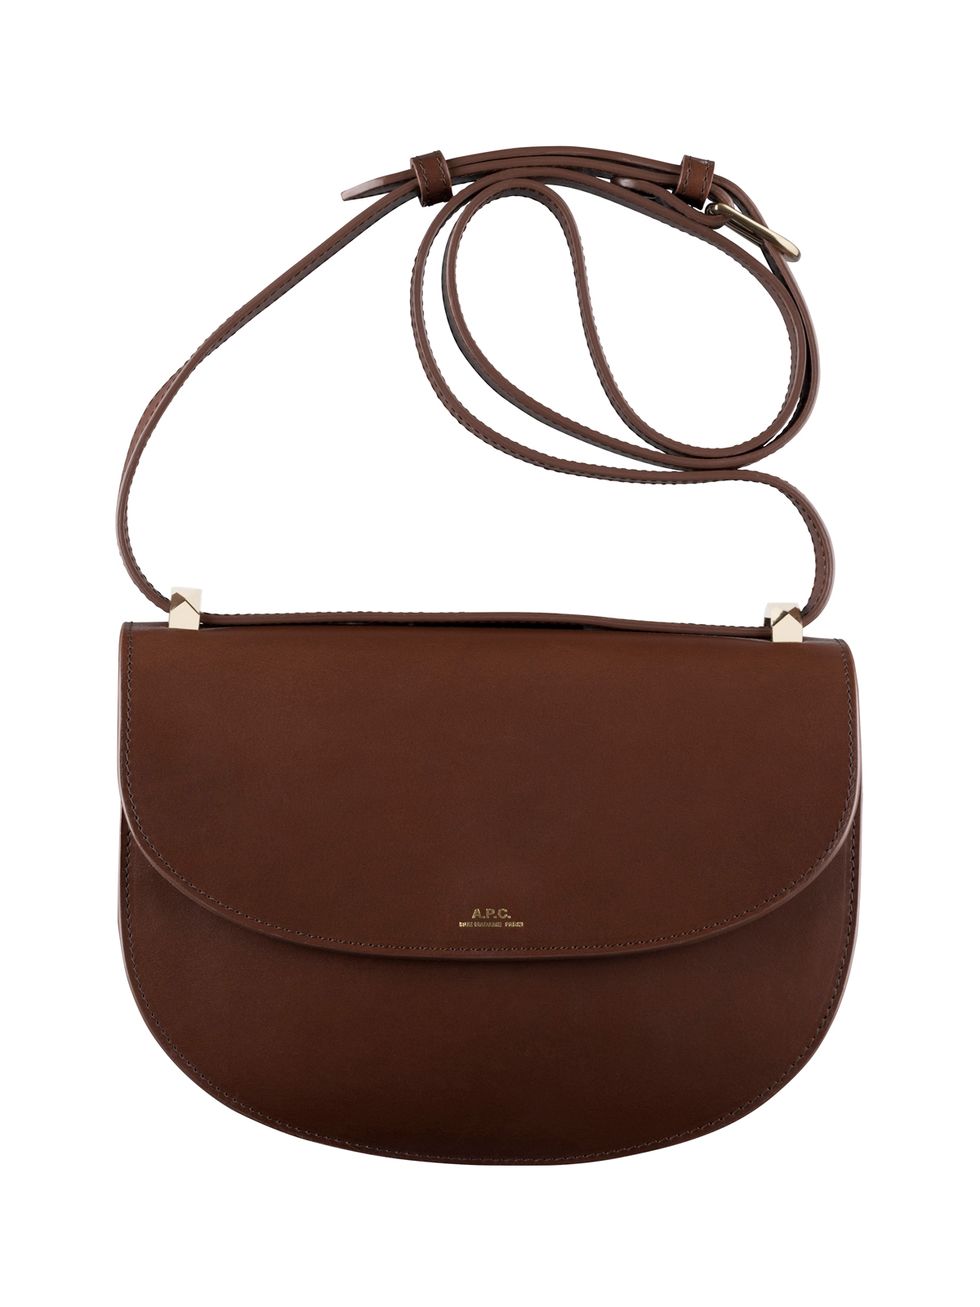 Bag, Handbag, Brown, Leather, Tan, Fashion accessory, Shoulder bag, Beige, Material property, Strap, 